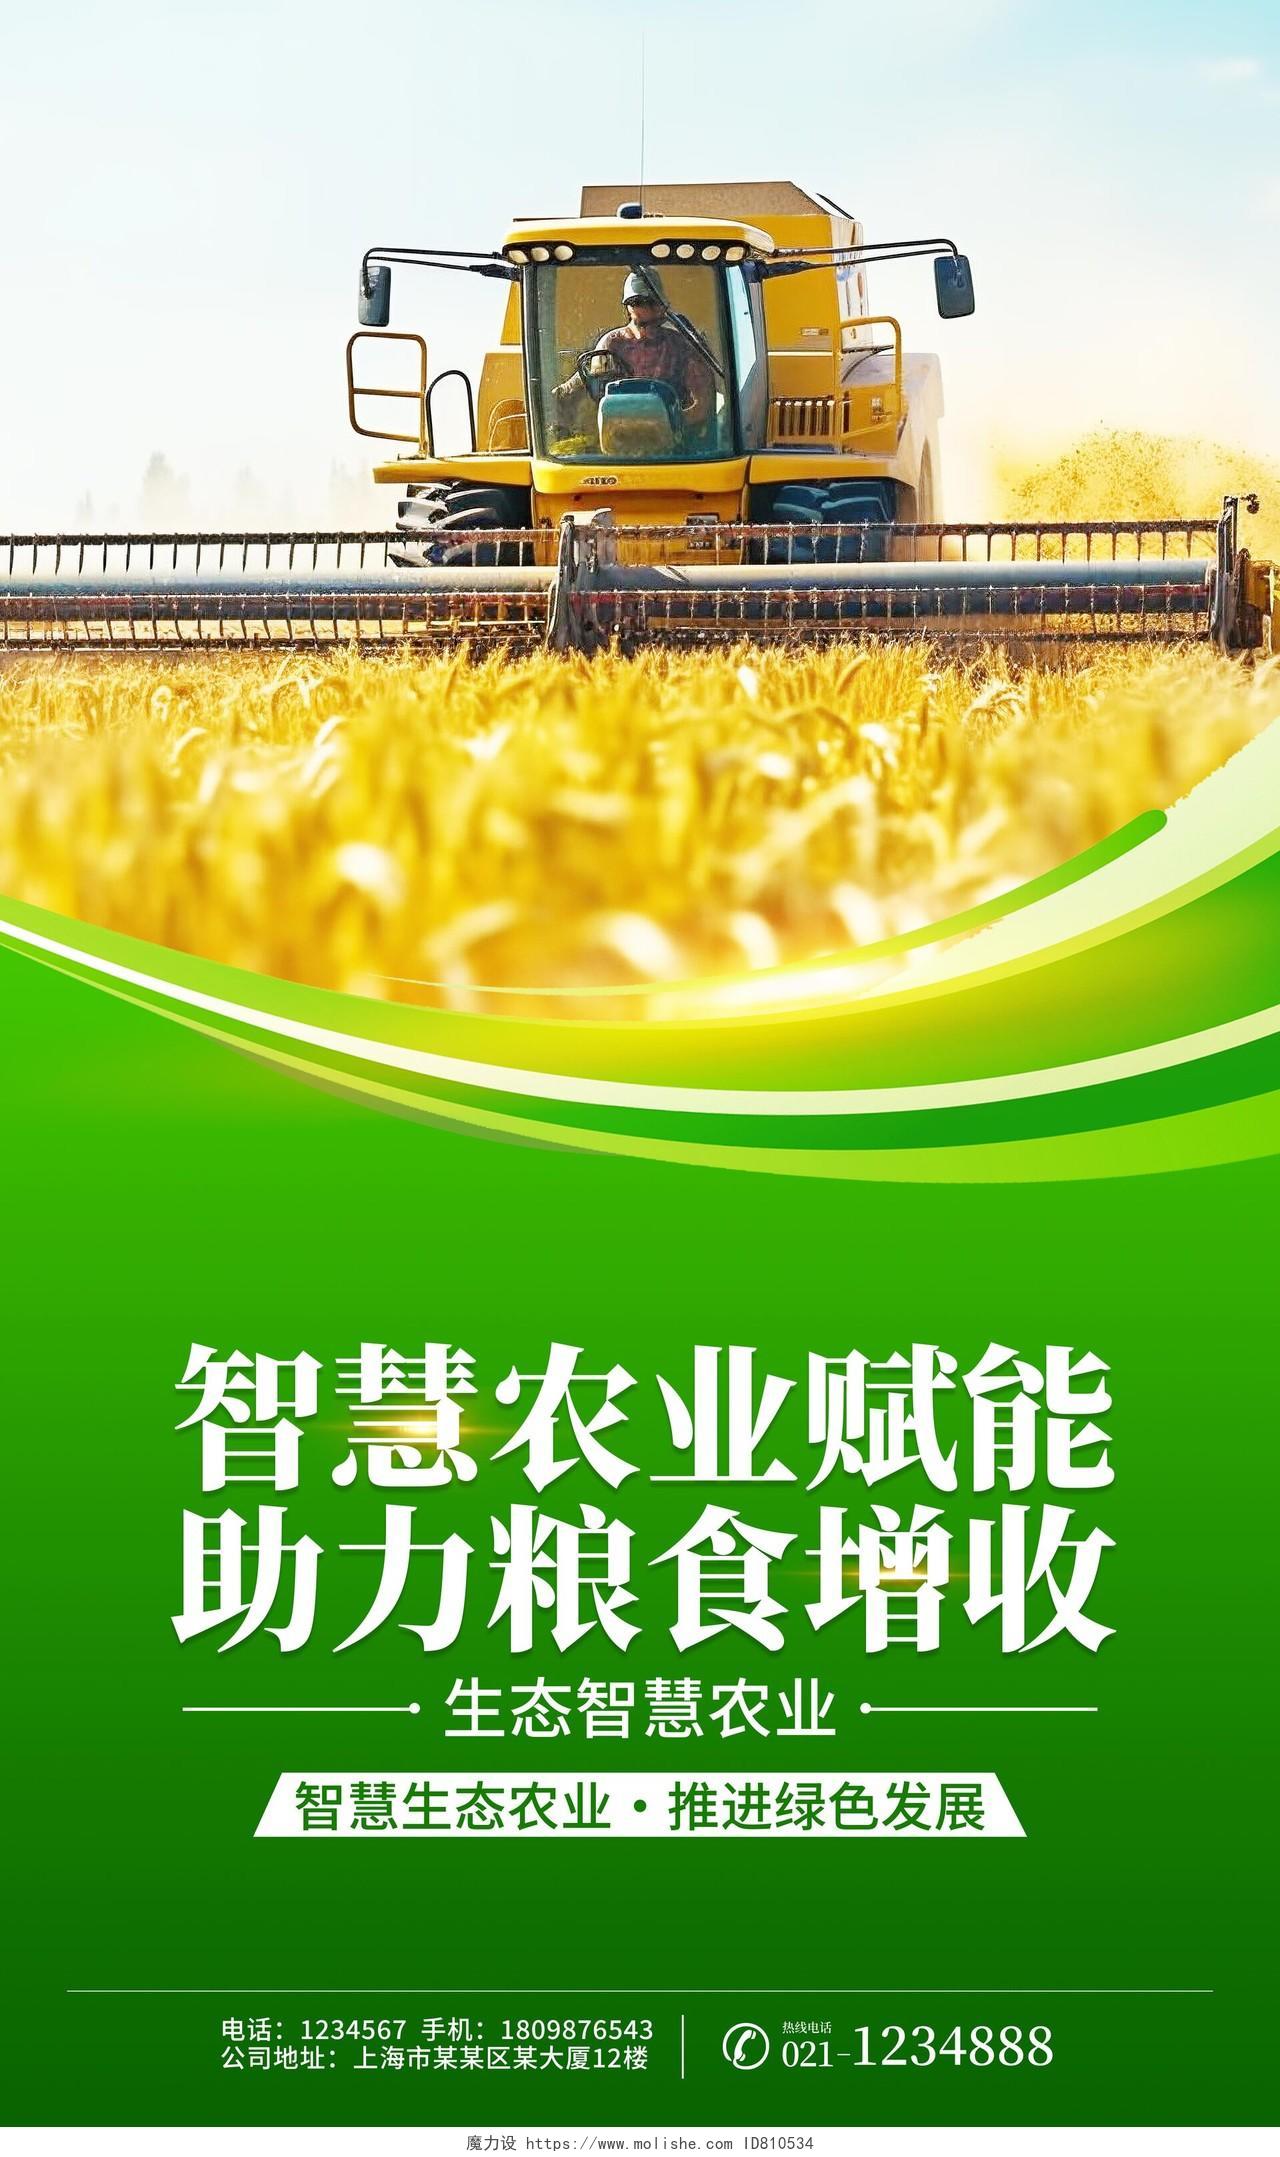 时尚大气智慧农业高效种植宣传海报挂画